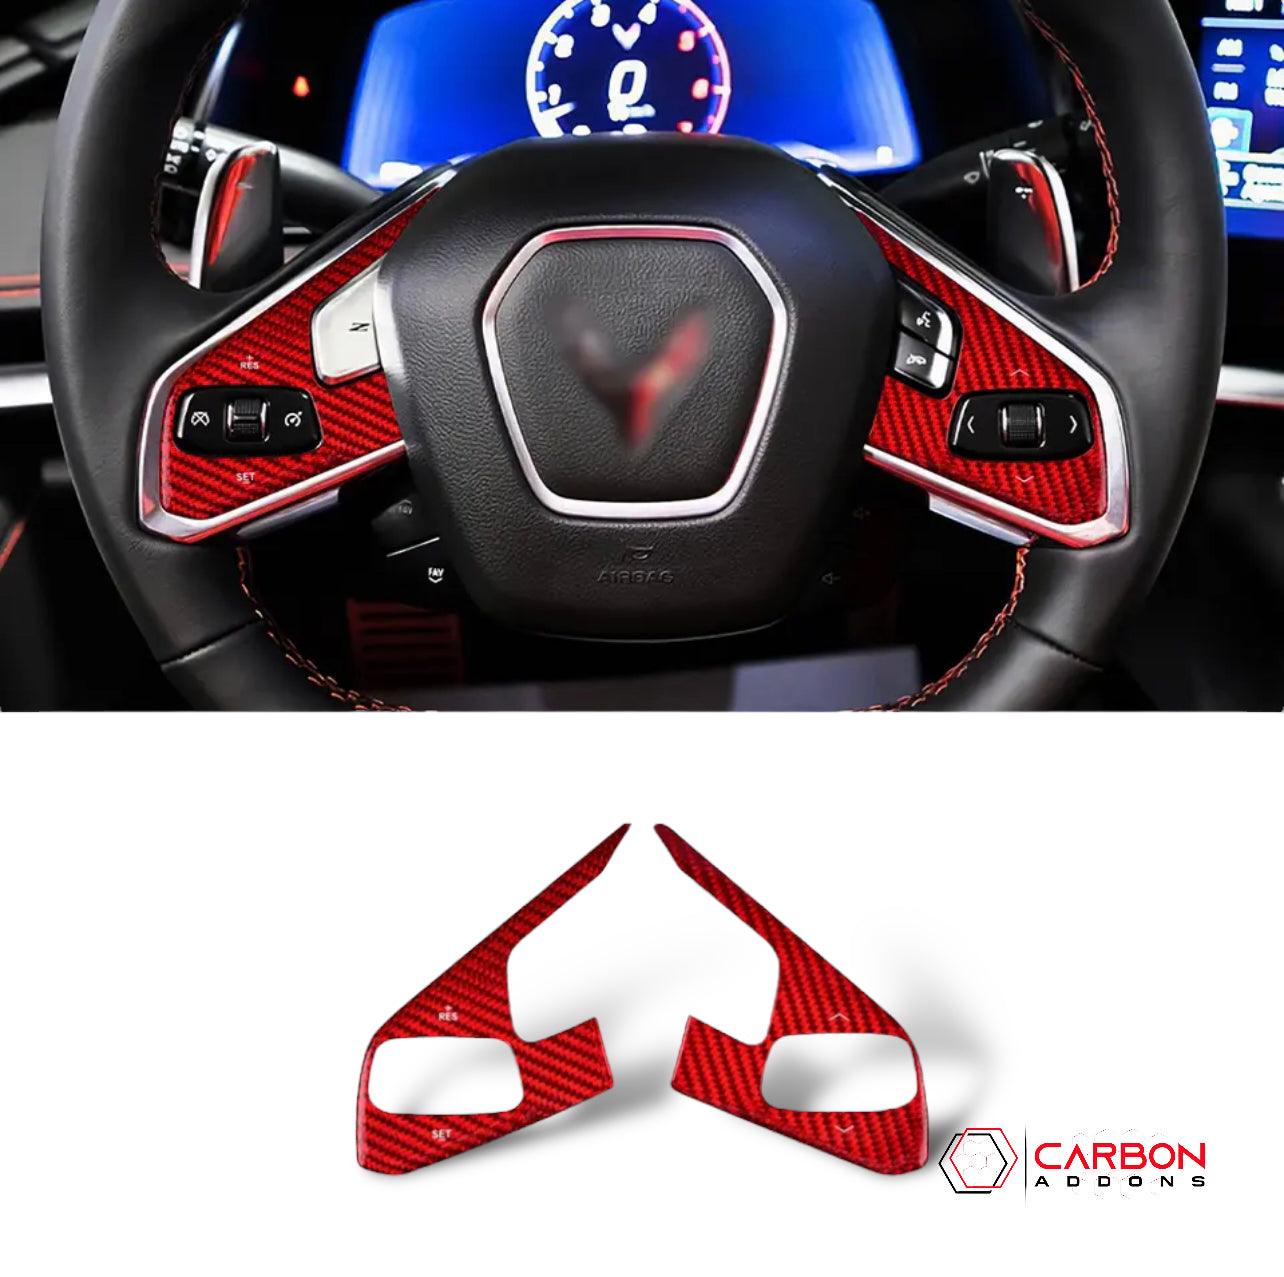 [2pcs] C8 Corvette Carbon Fiber Steering Wheel Button Trim Cover - carbonaddons Carbon Fiber Parts, Accessories, Upgrades, Mods